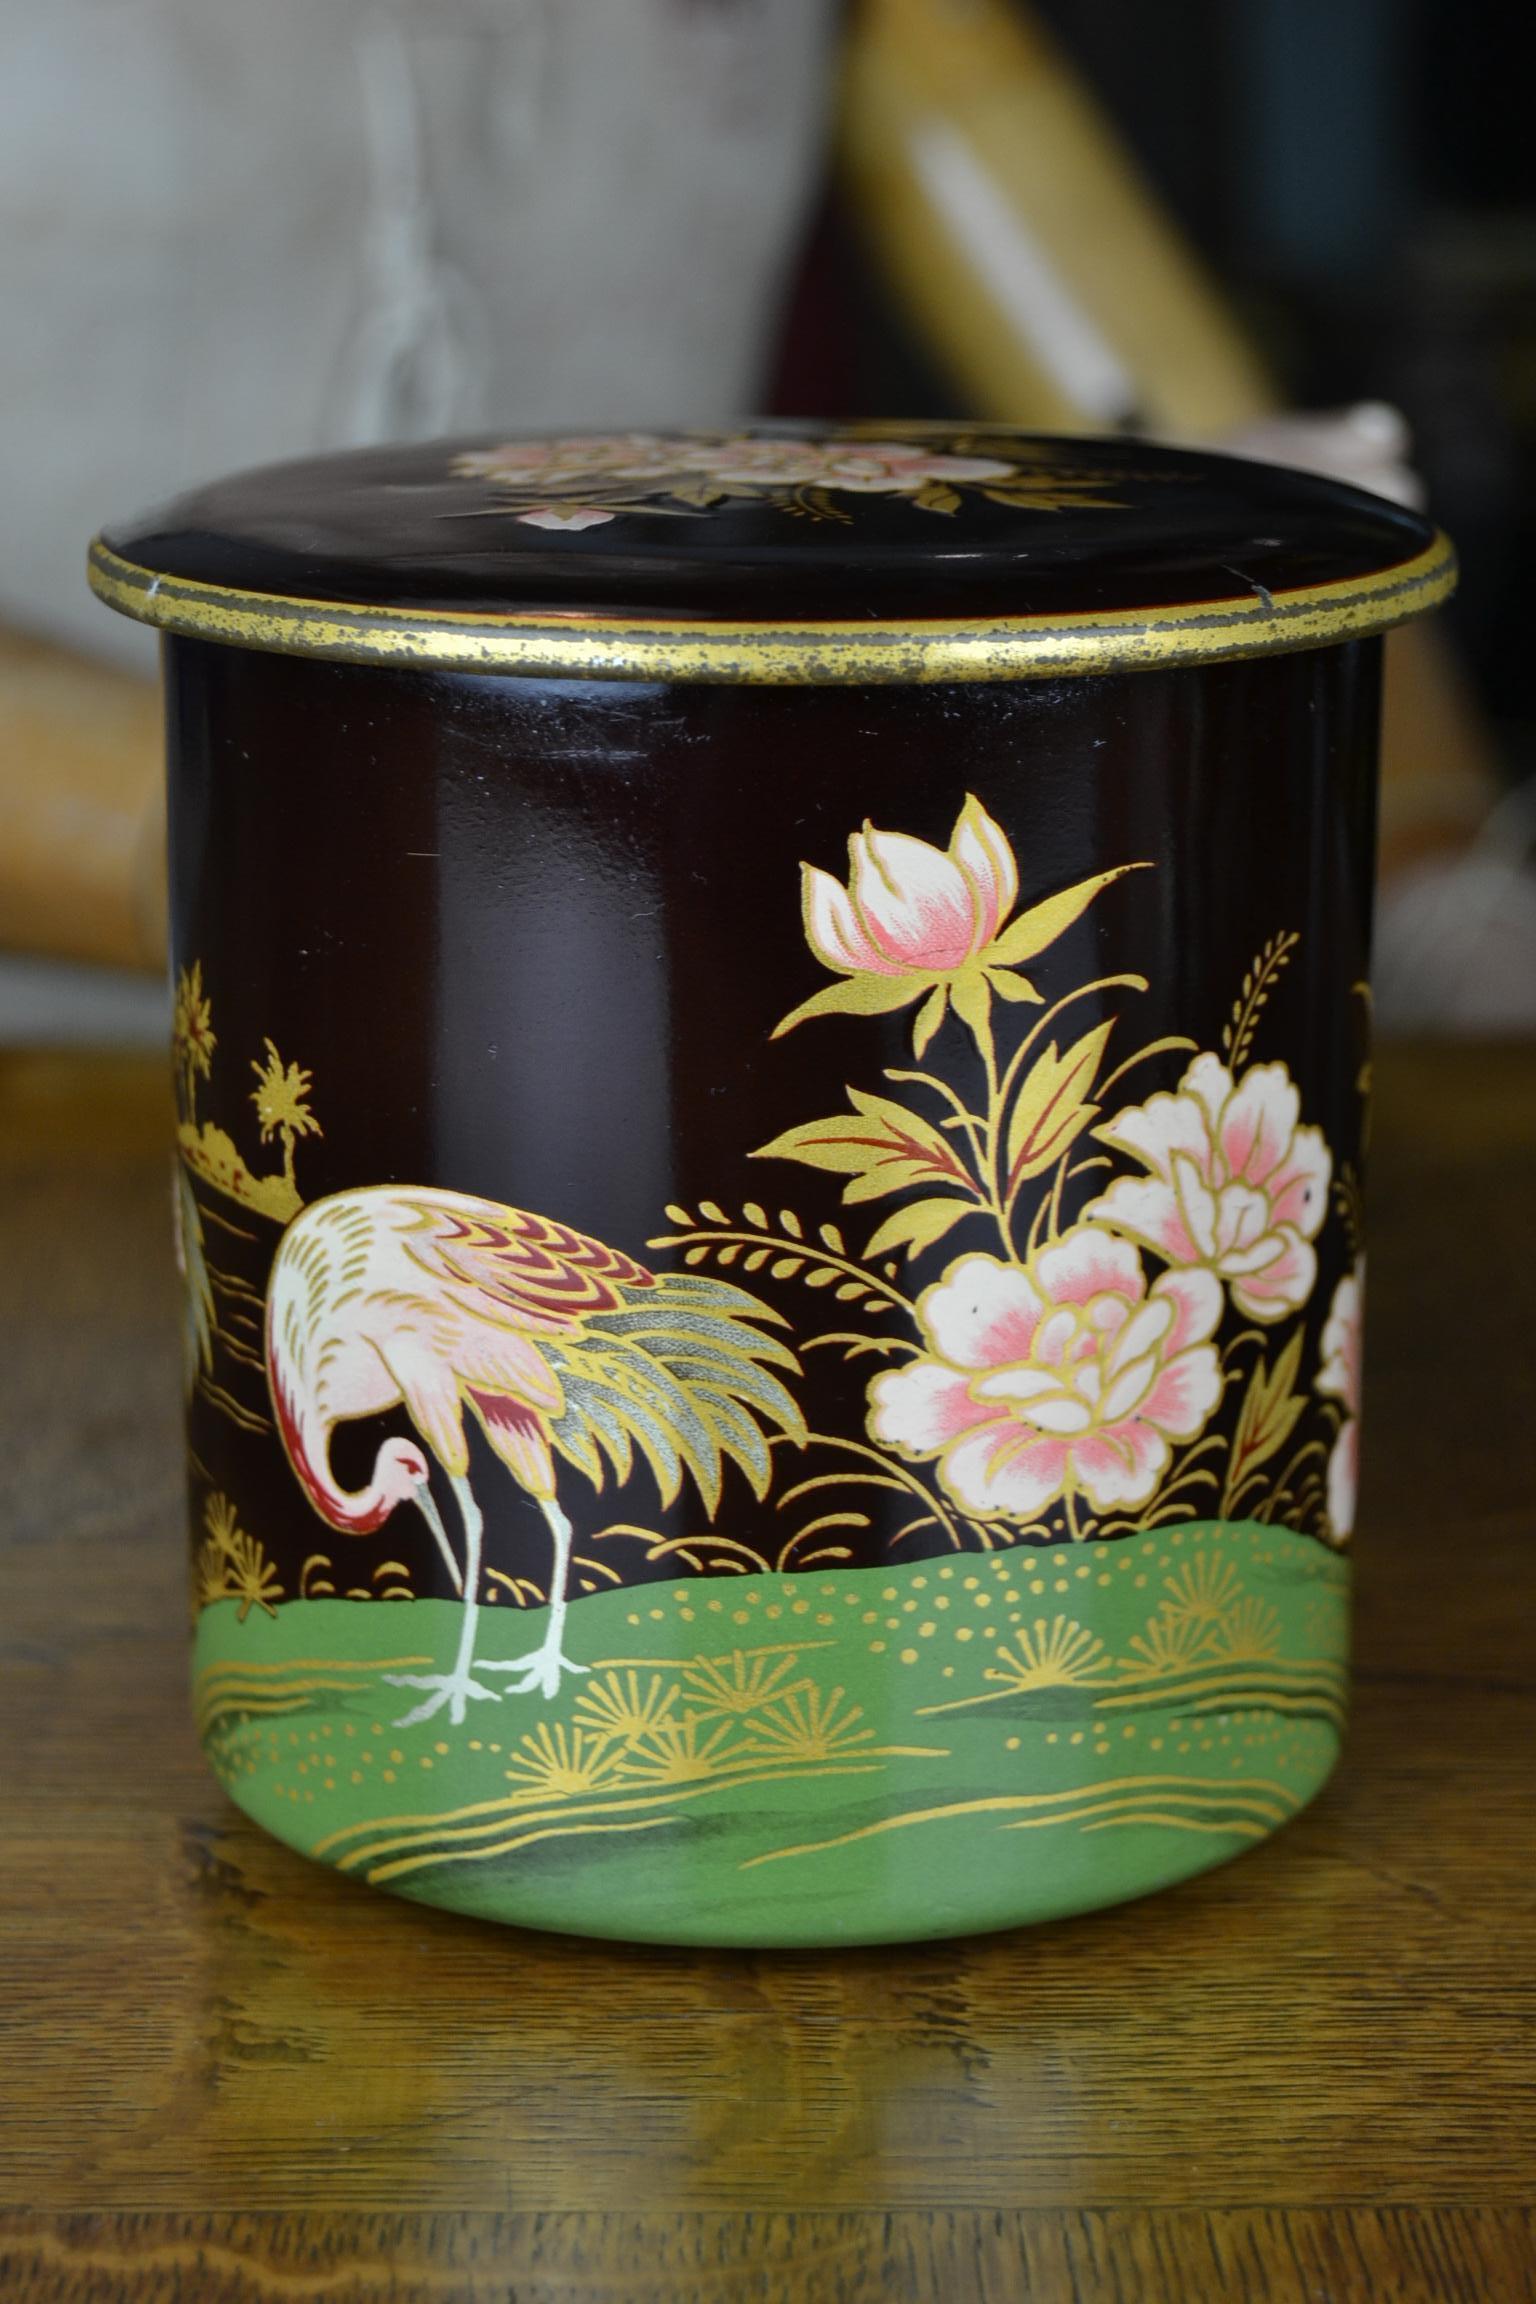 European Tin Boxes with Flamingo and Cranes, Oriental Style